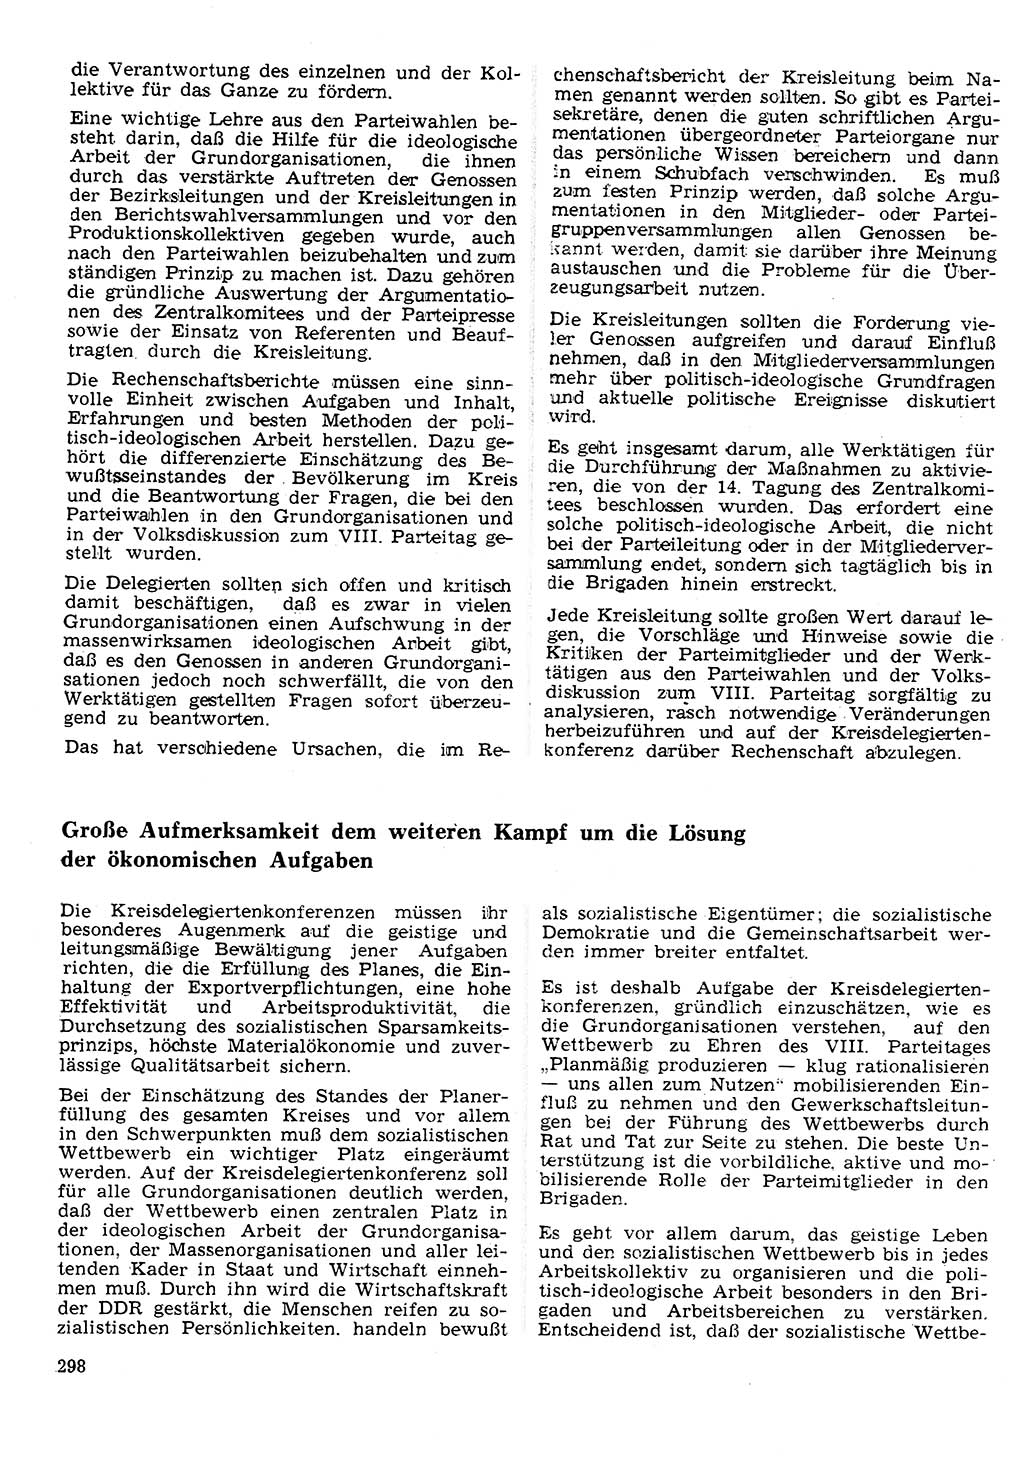 Neuer Weg (NW), Organ des Zentralkomitees (ZK) der SED (Sozialistische Einheitspartei Deutschlands) für Fragen des Parteilebens, 26. Jahrgang [Deutsche Demokratische Republik (DDR)] 1971, Seite 298 (NW ZK SED DDR 1971, S. 298)